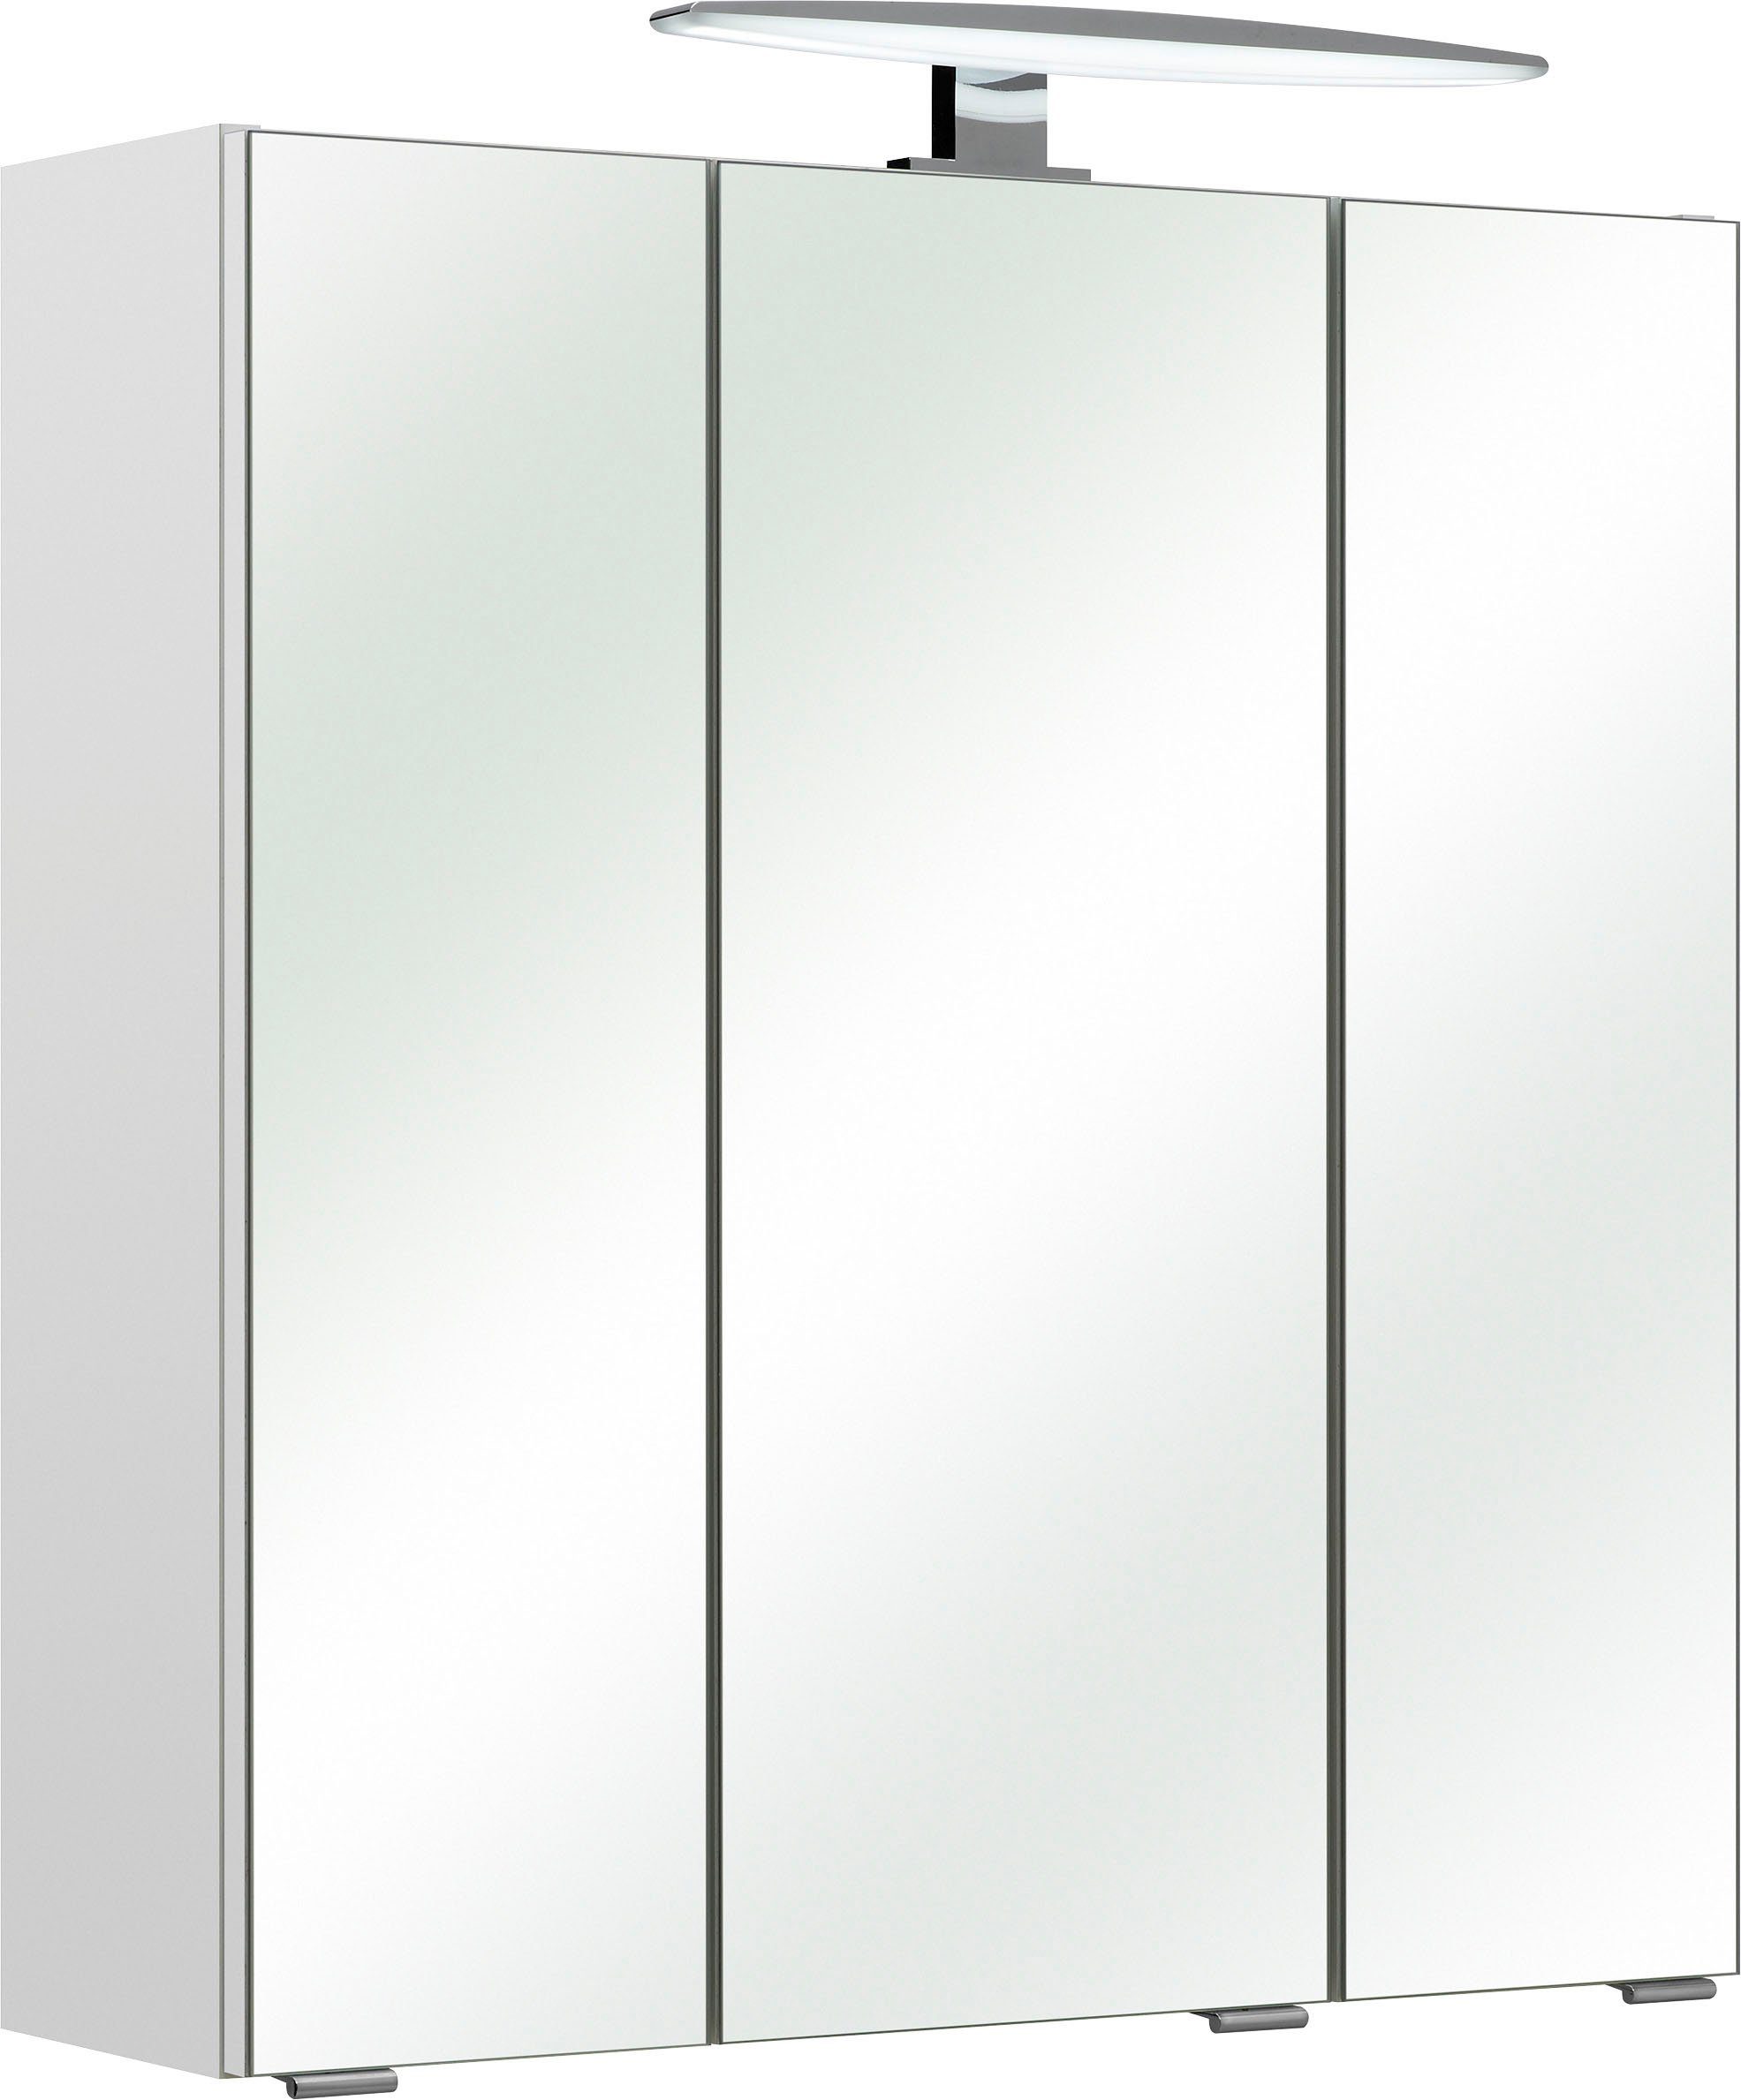 PELIPAL Spiegelschrank Quickset 953 Breite 65 cm, 3-türig, LED-Beleuchtung, Schalter-/Steckdosenbox | Spiegelschränke